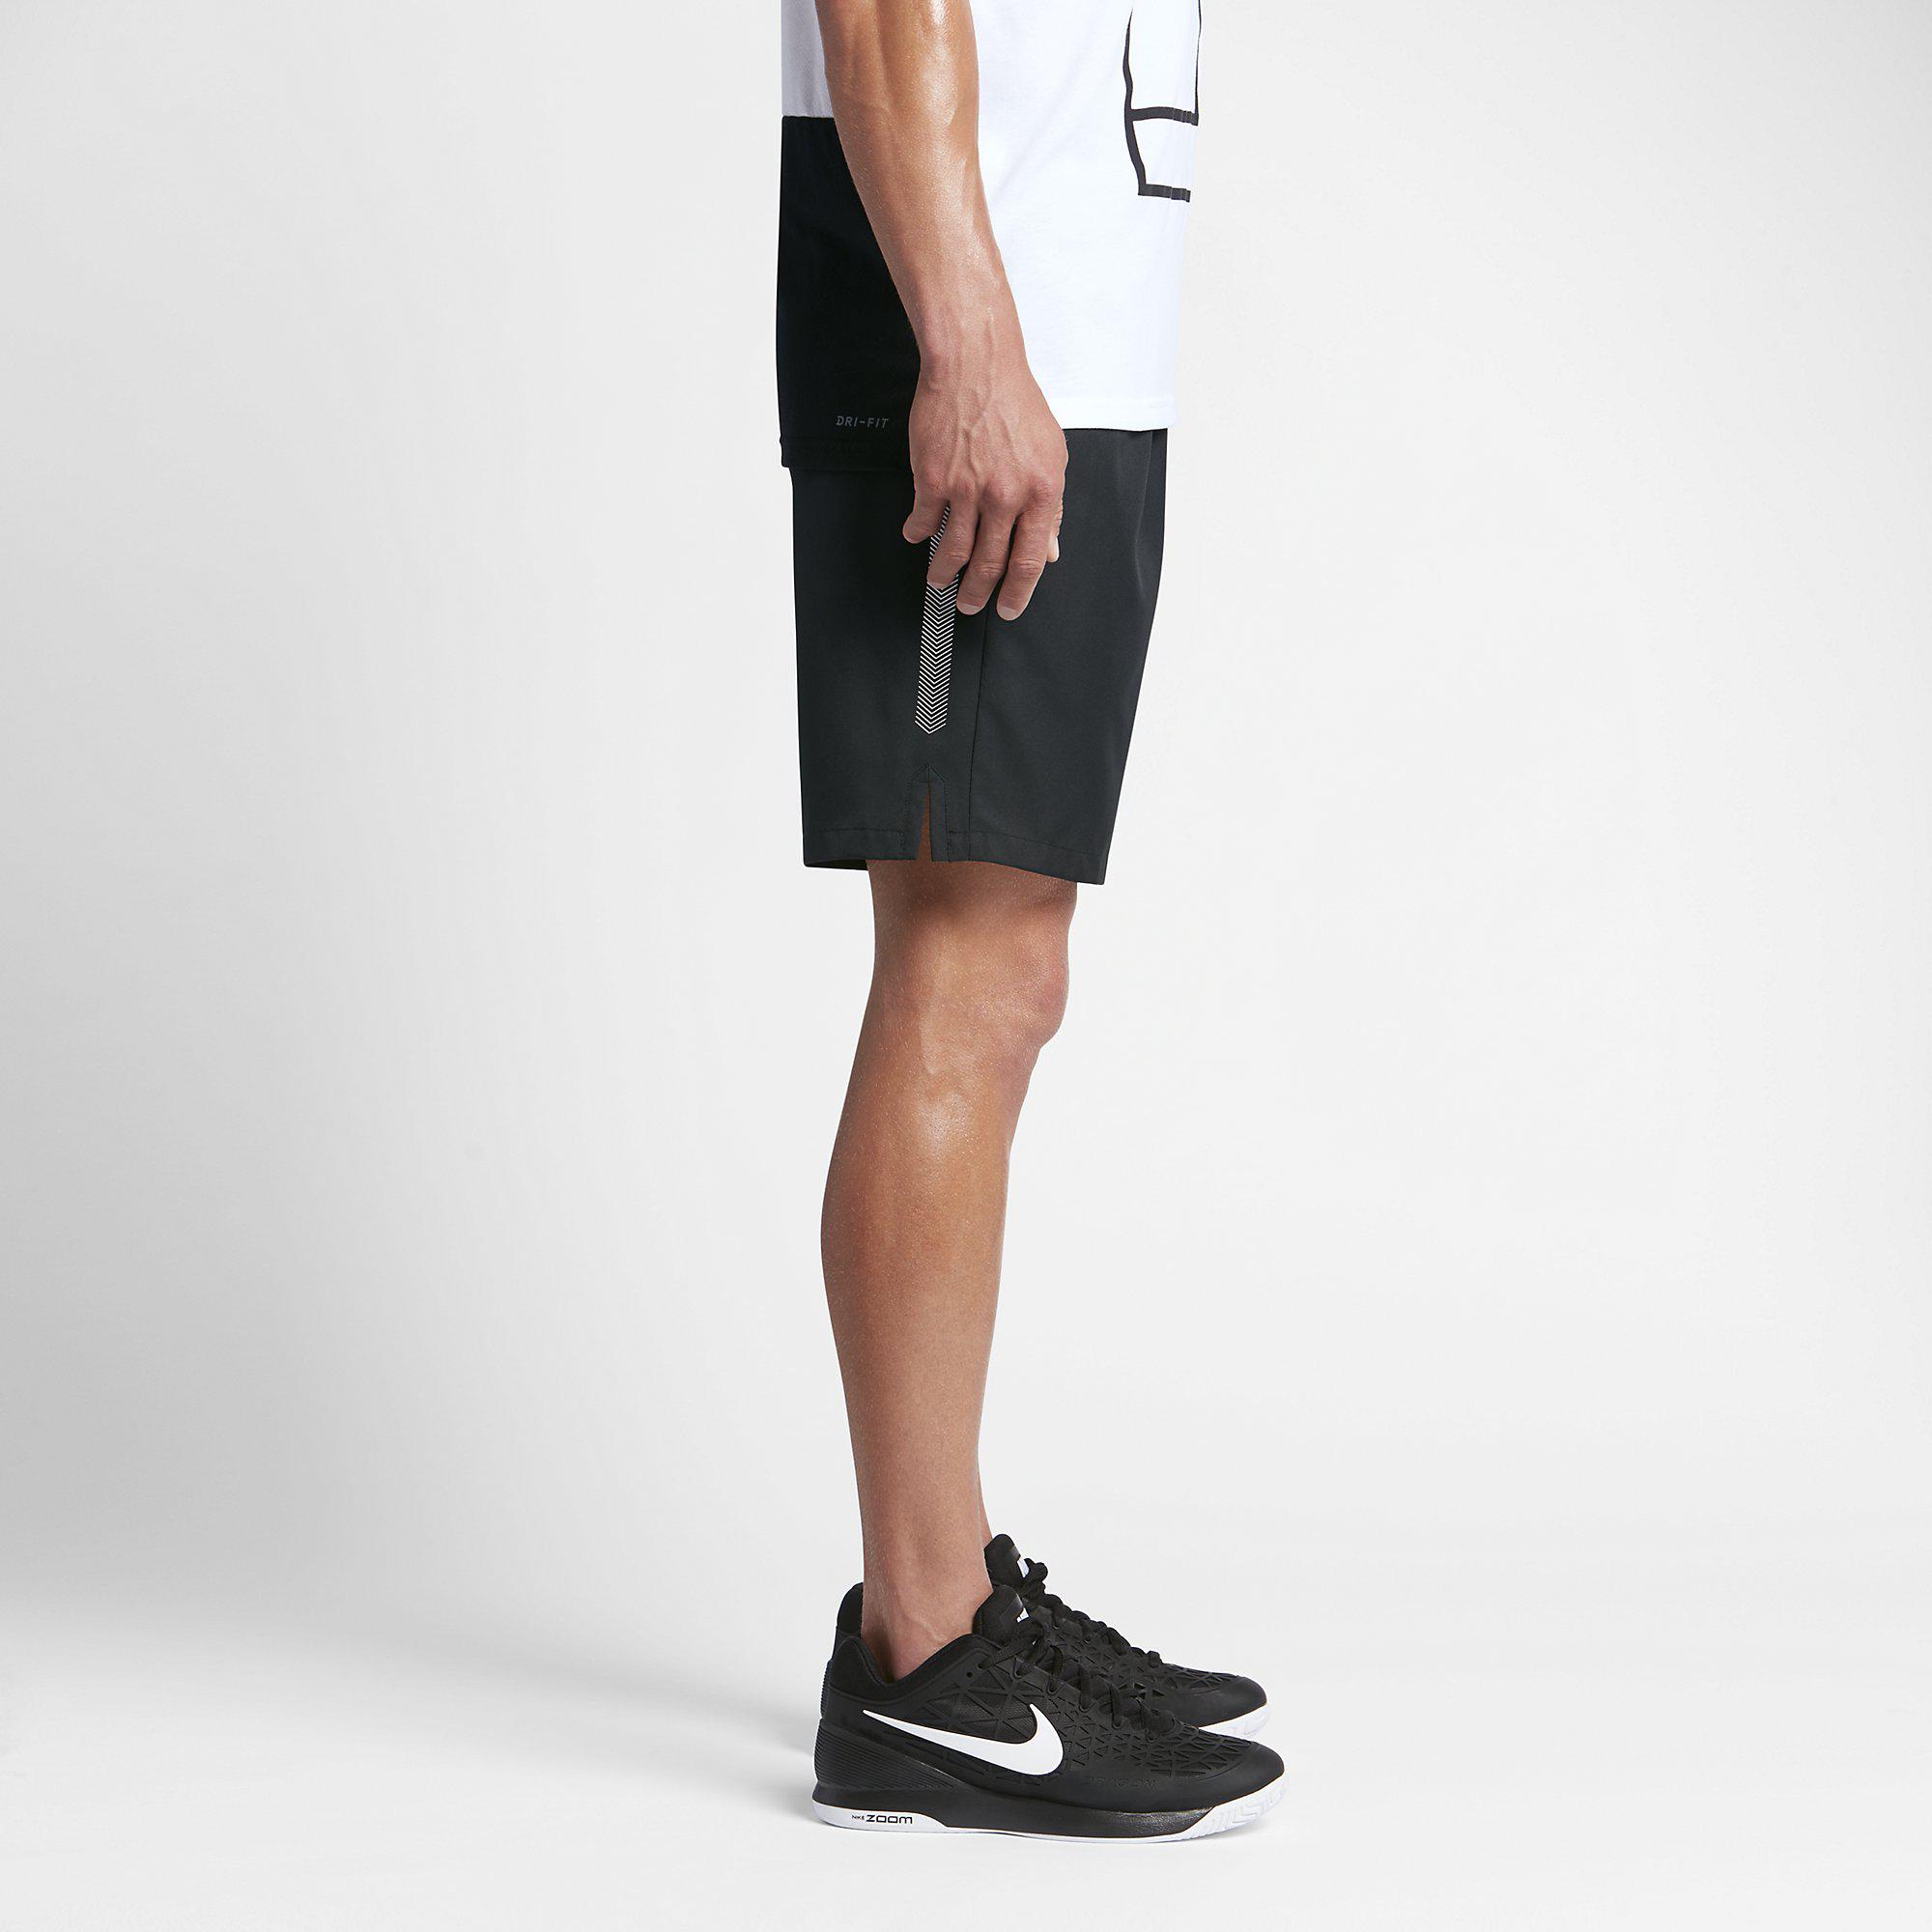 Nike Mens Dry 9 Inch Tennis Shorts - Black - Tennisnuts.com